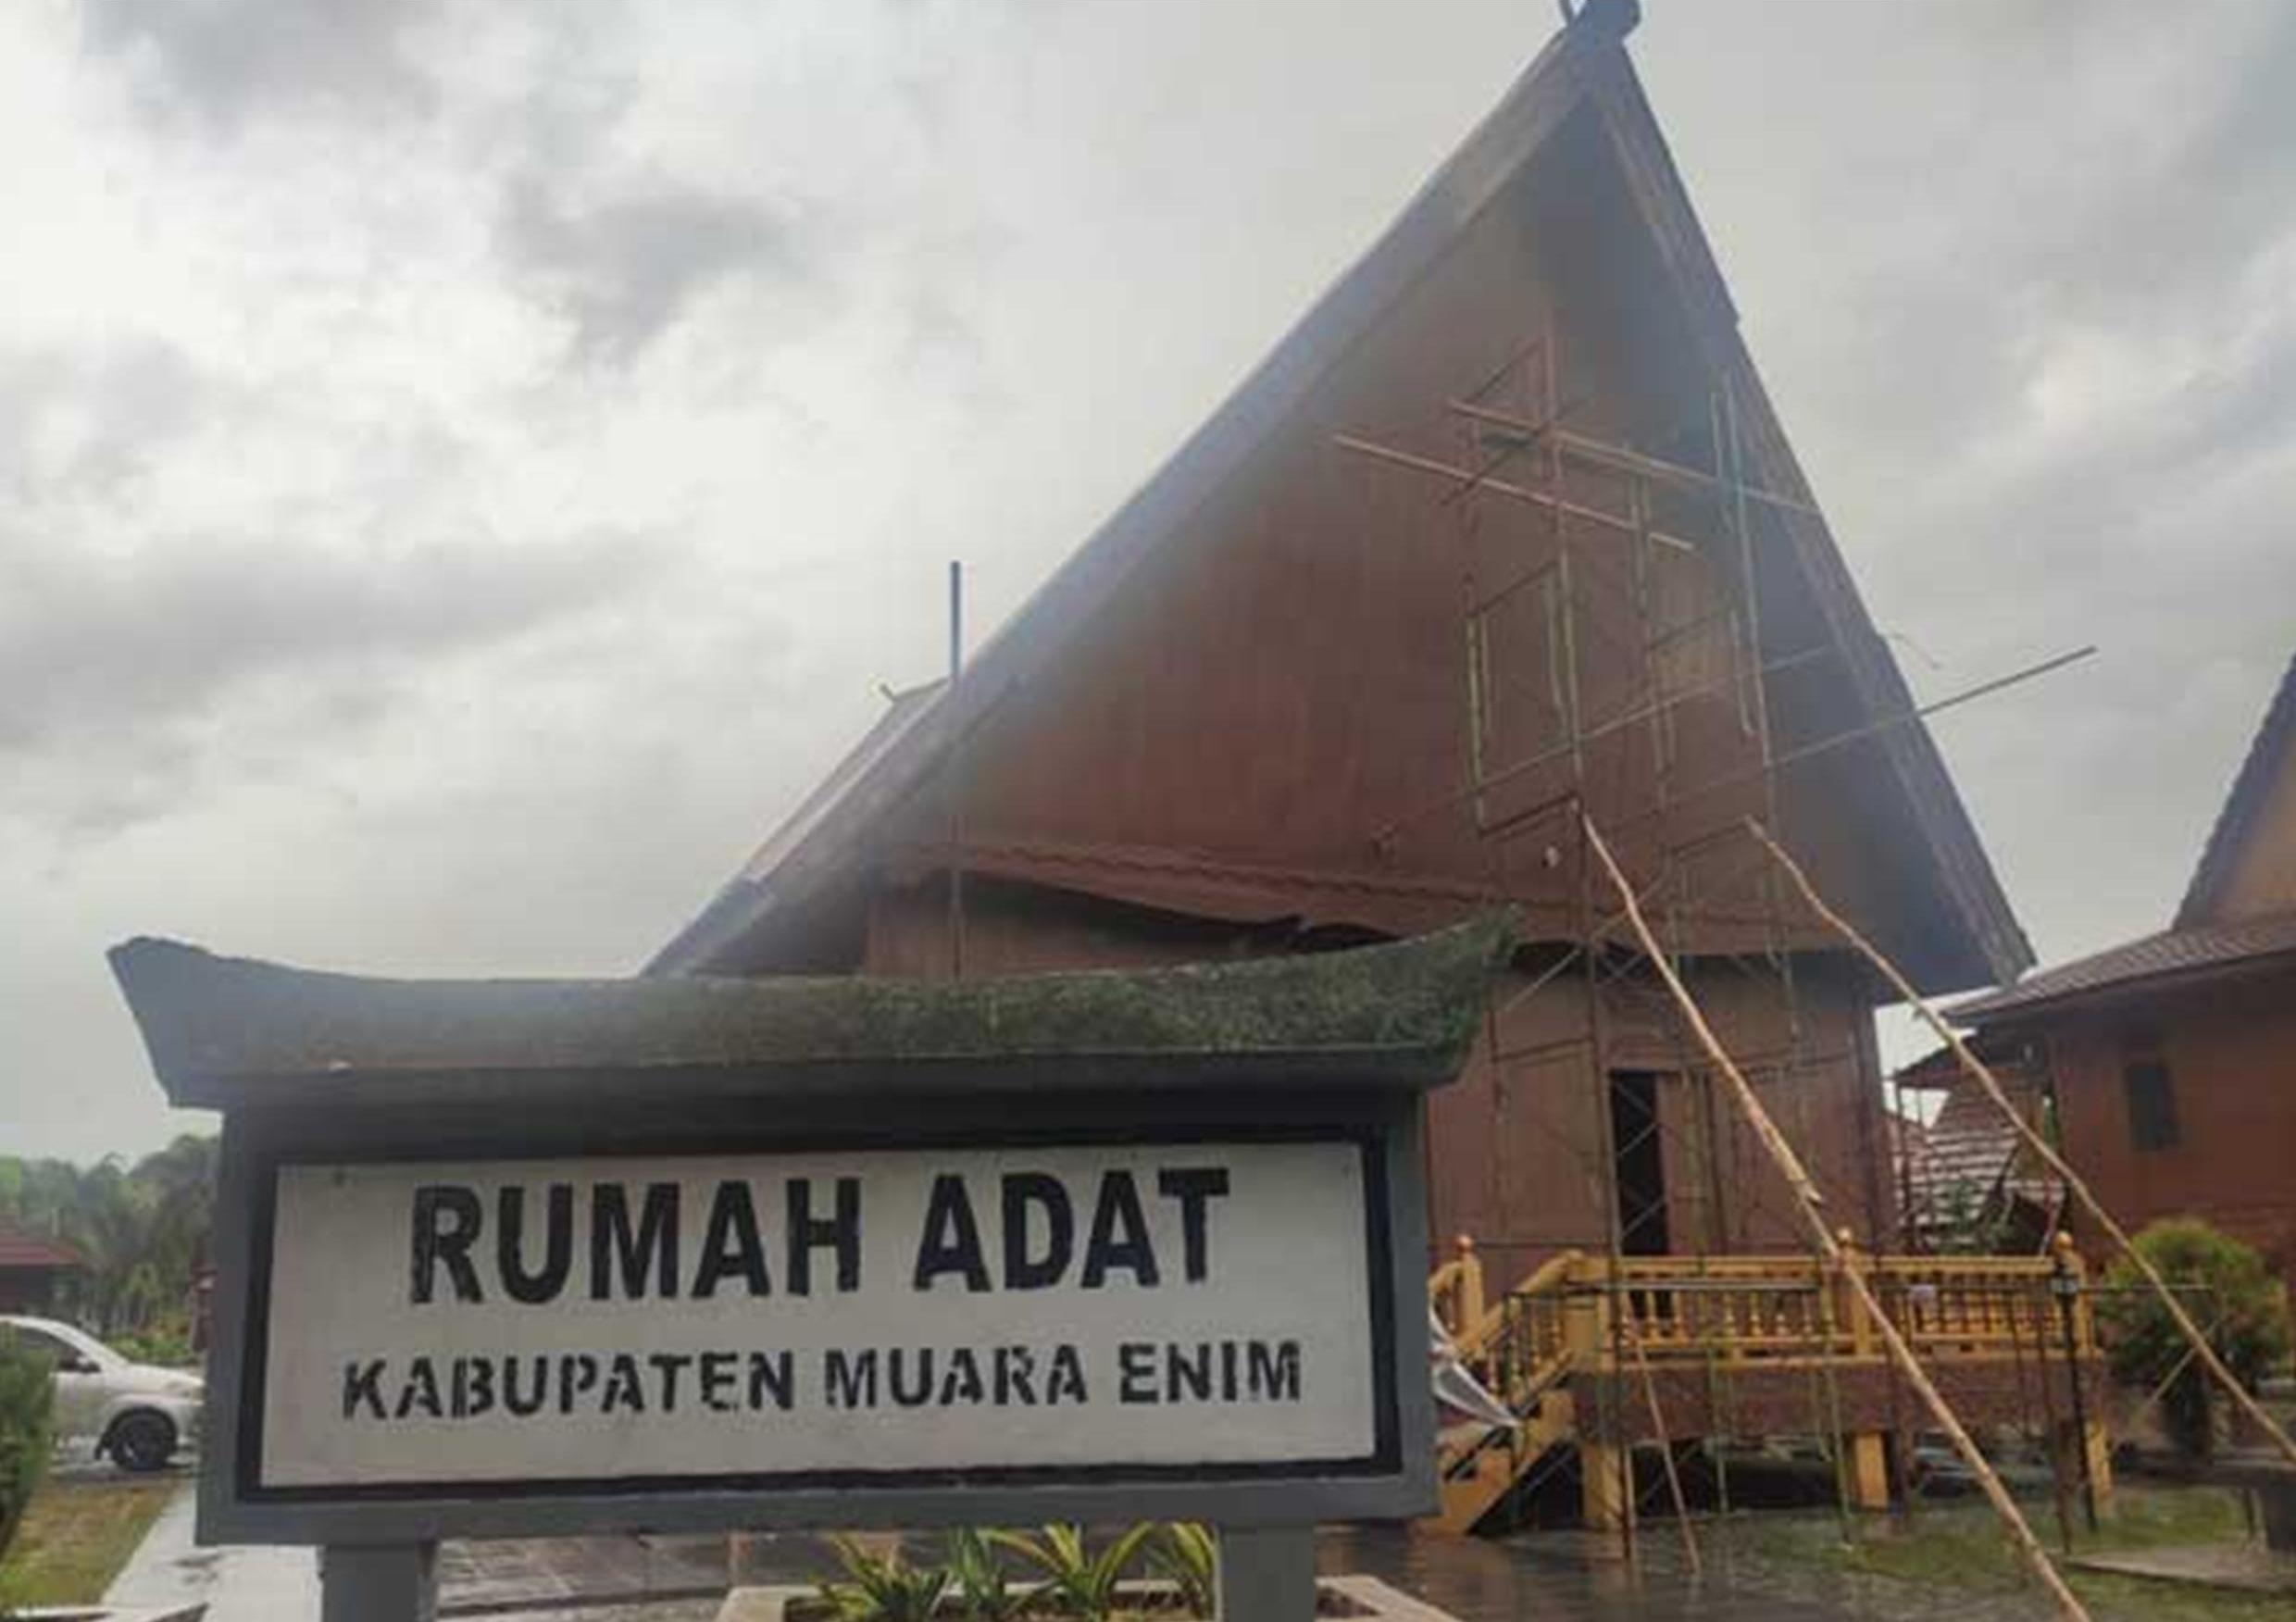 Rumah Adat Kabupaten Muara Enim Sumatera Selatan Berarsitektur Ulu Semende